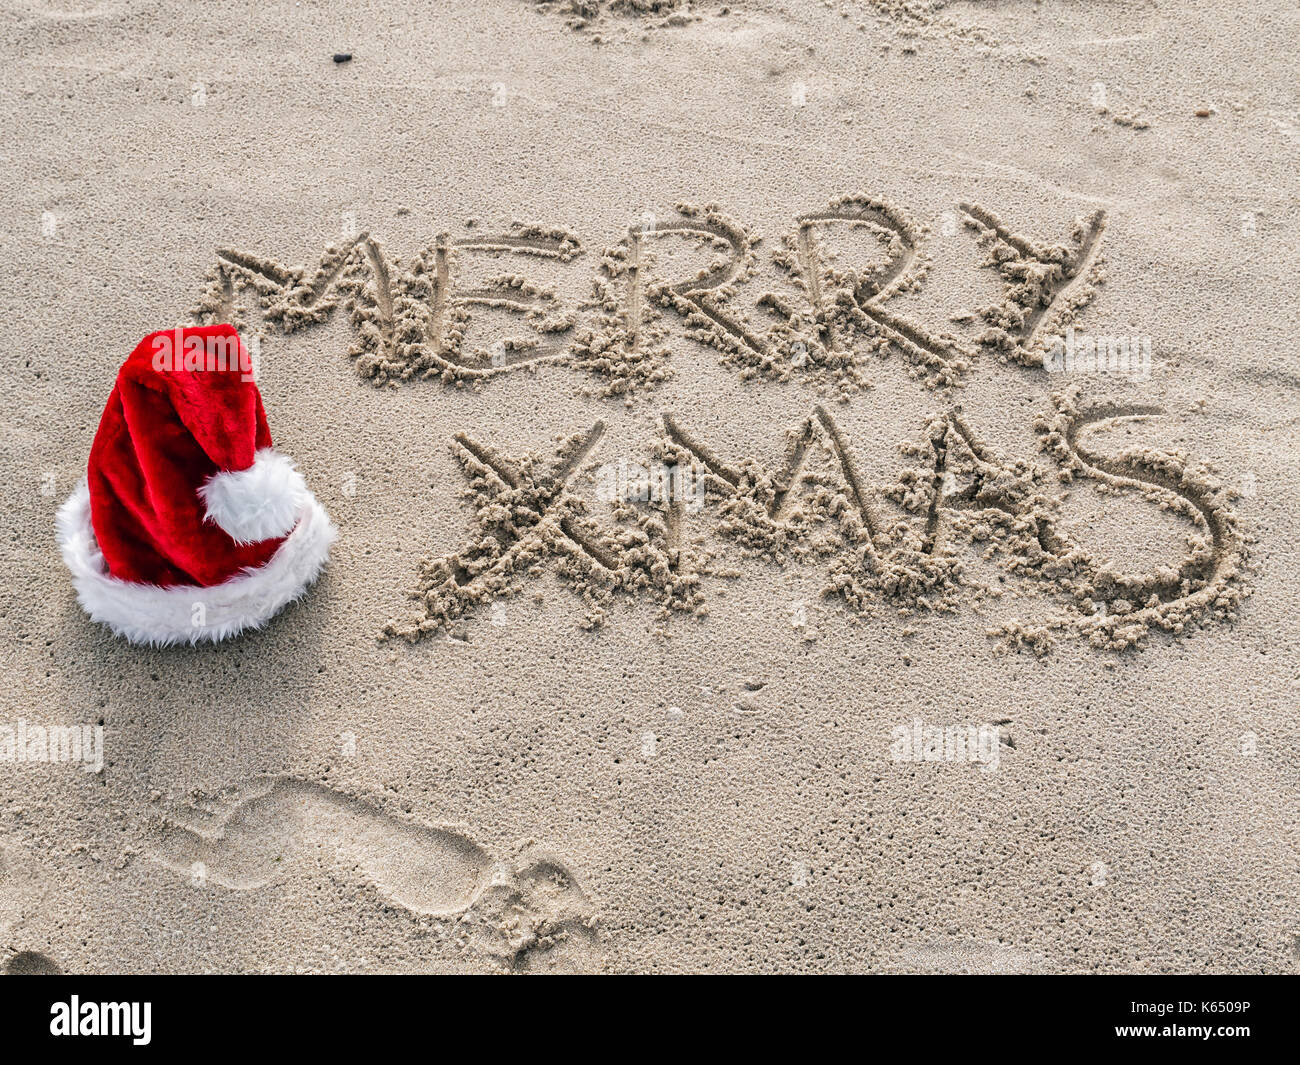 Joyeux noël bonjour manuscrite sur la plage avec du sable rouge santa claus hat Banque D'Images